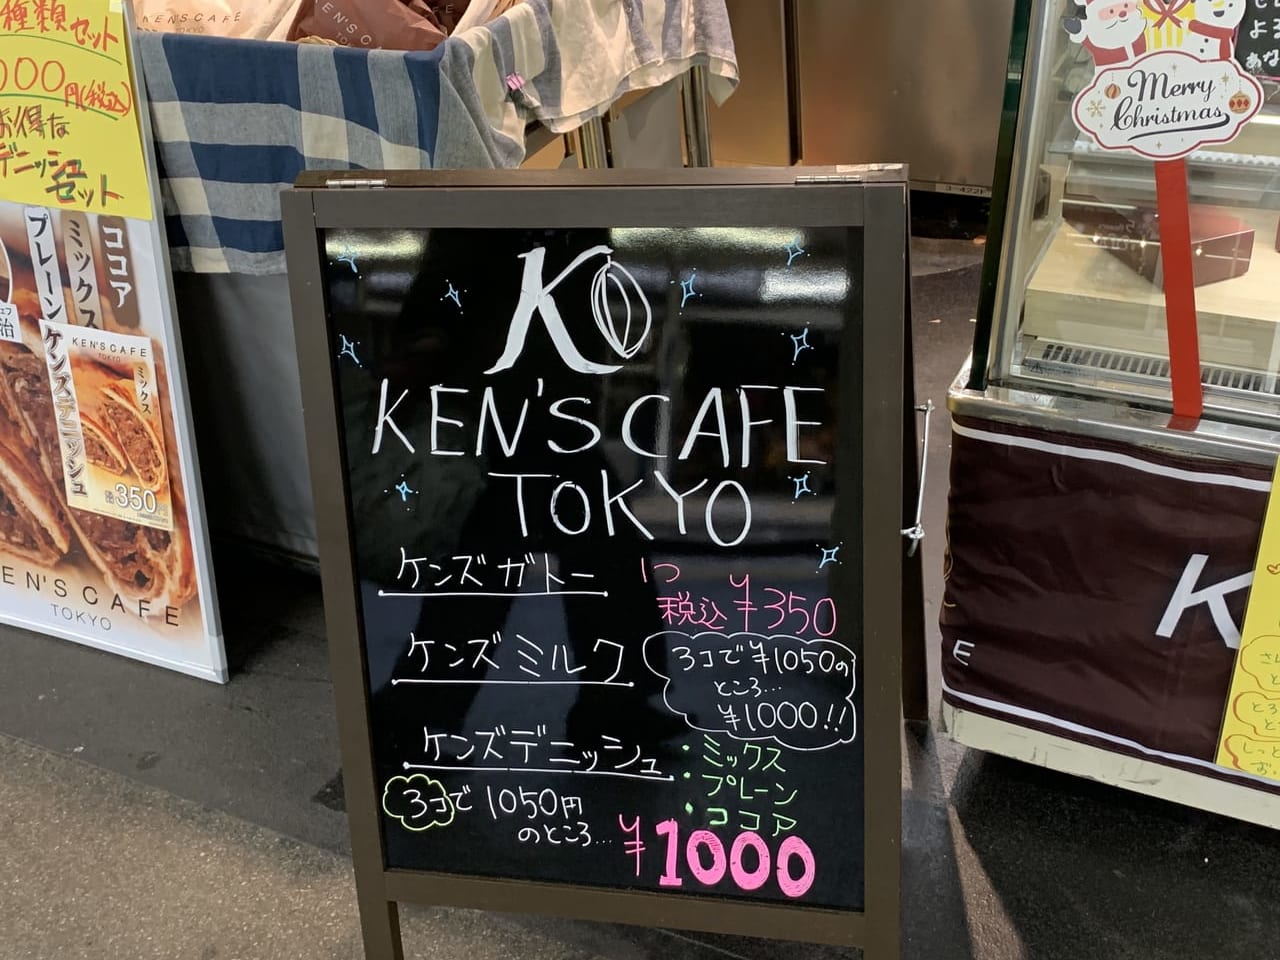 KEN'S CAFE TOKYO看板